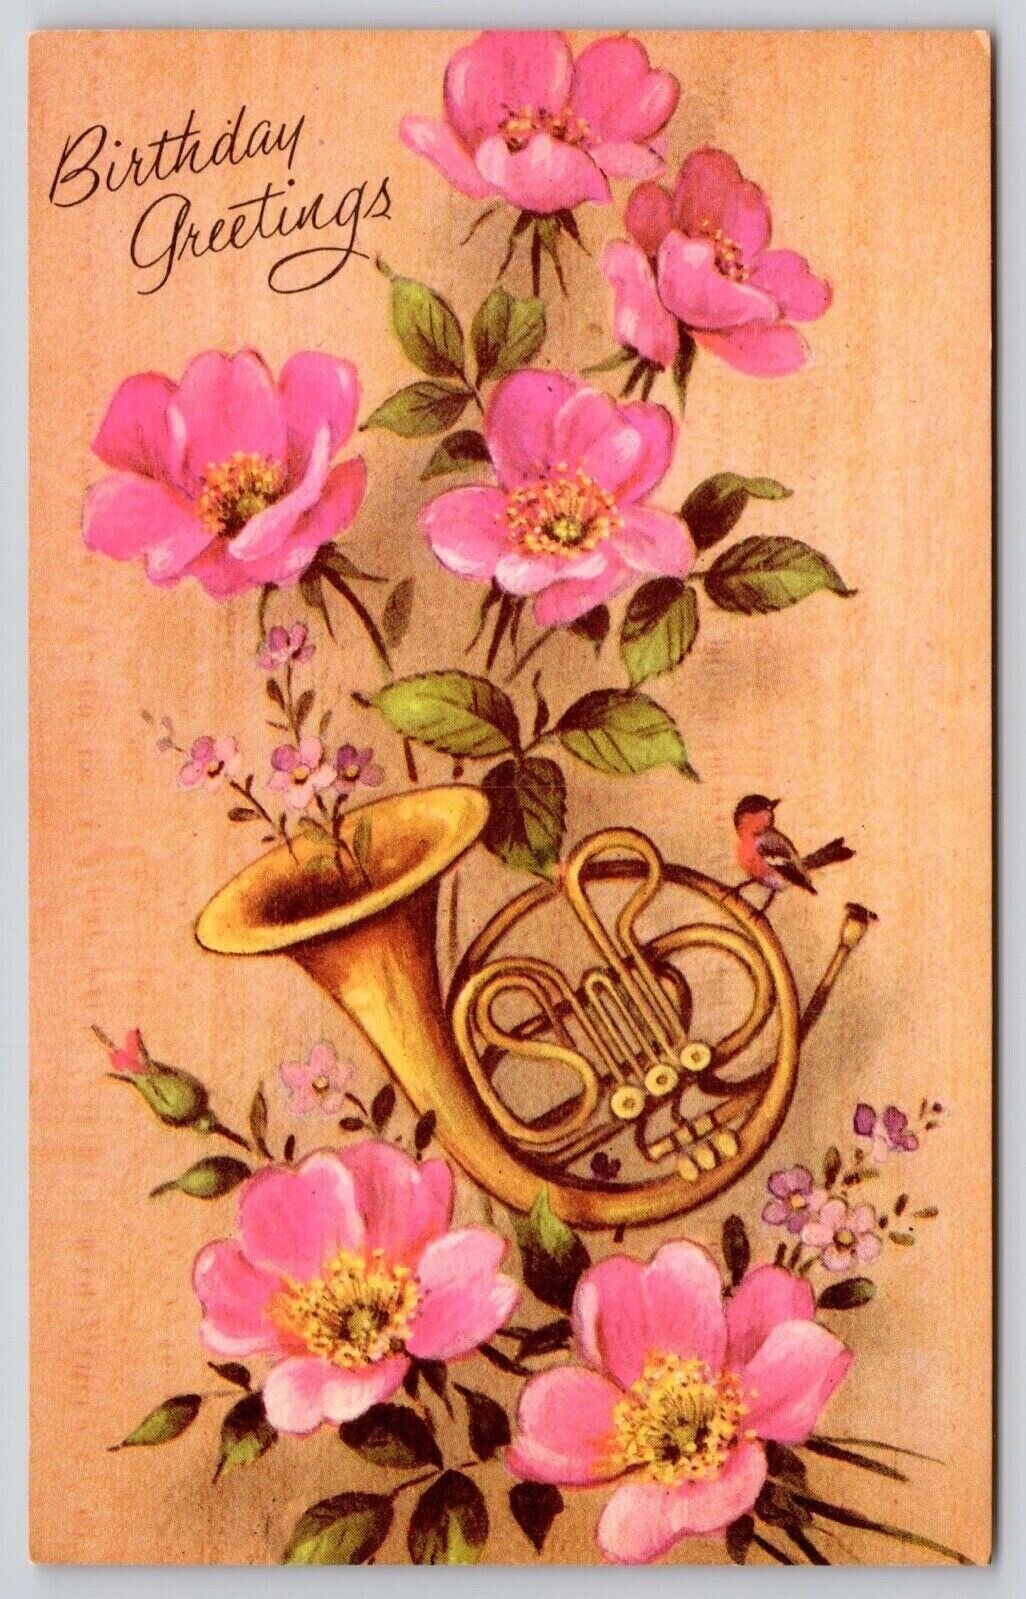 Postcard Wishing Happy Birthday Greetings Pink Flowers UNP VTG Unused Vintage